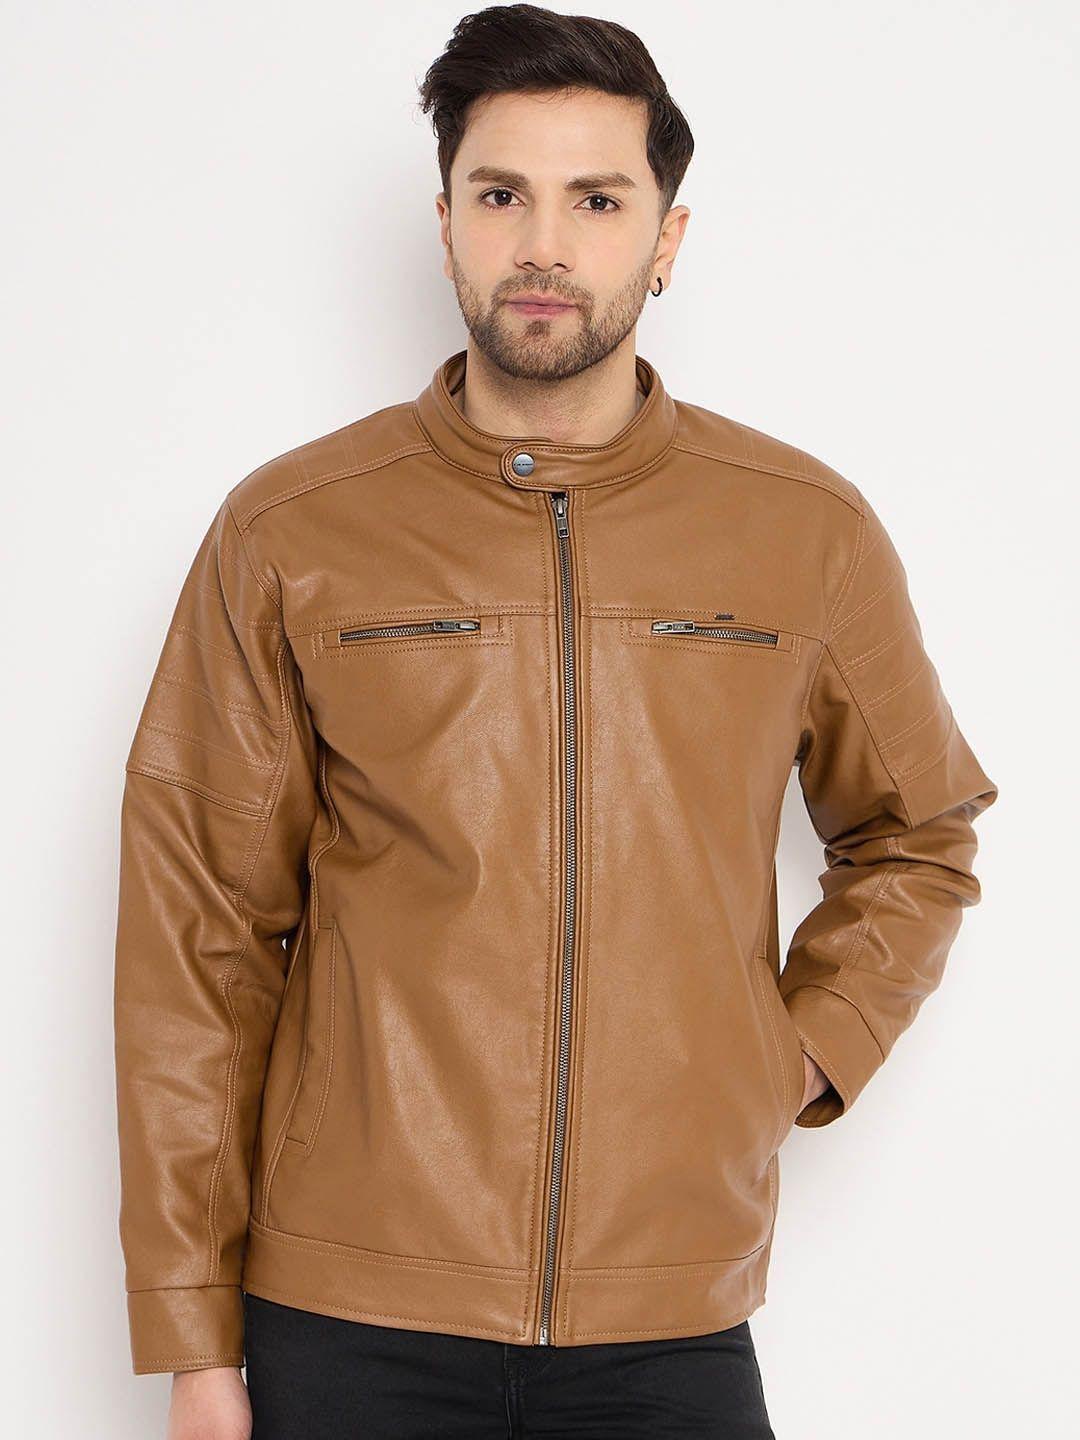 okane-long-sleeves-leather-biker-jacket